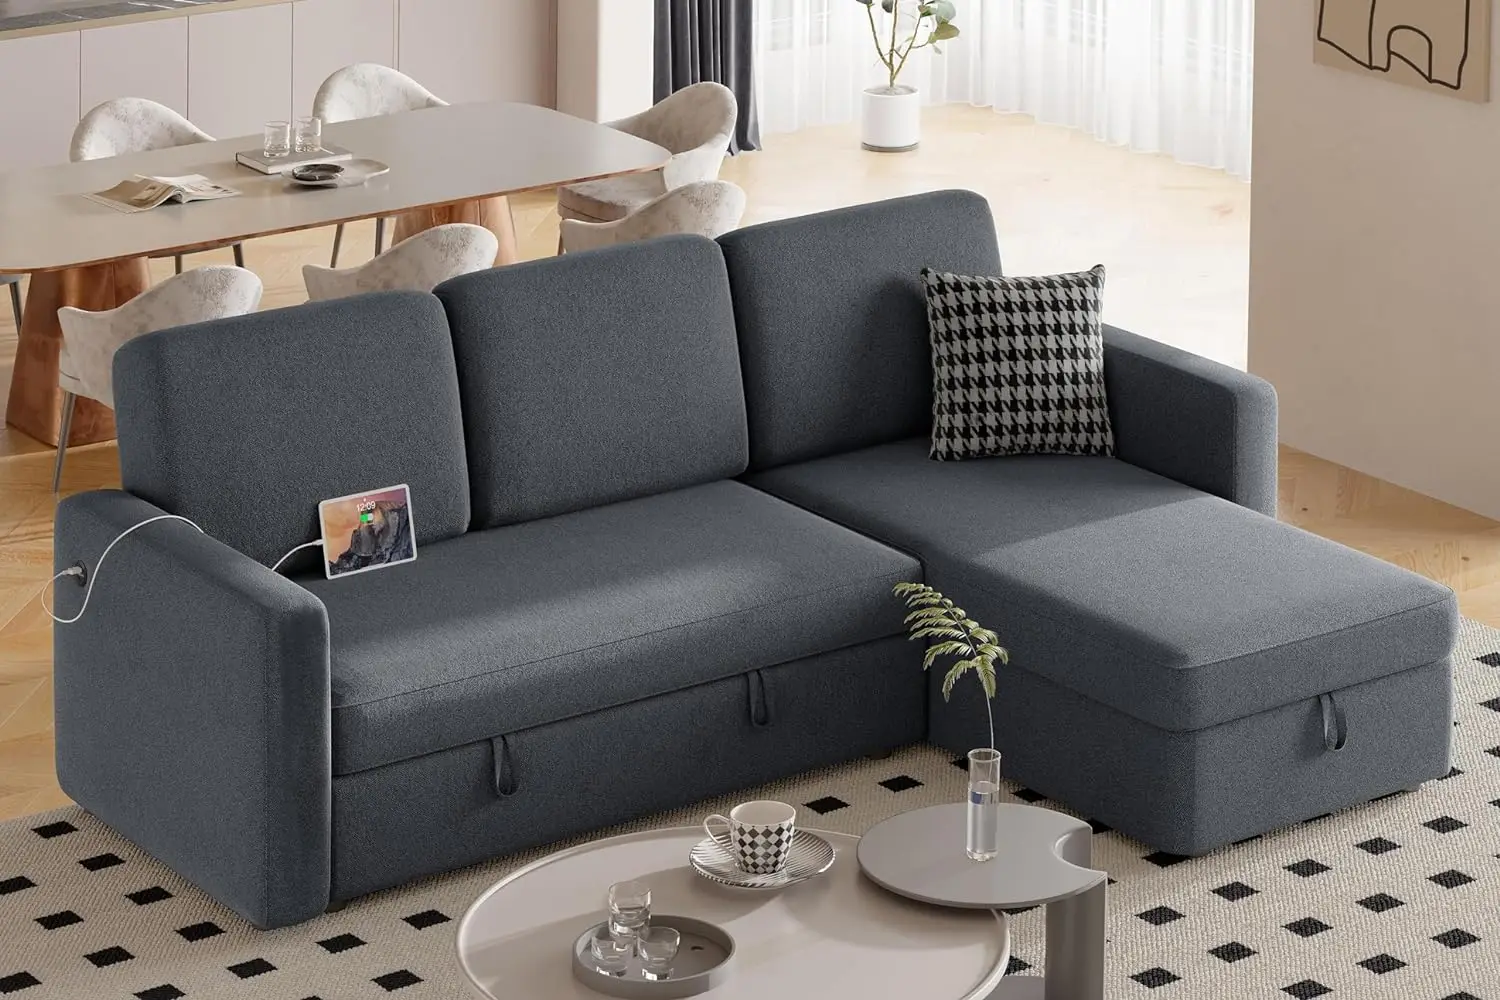 

Секционный диван L-образной формы, диван-кровать с кушеткой и USB, двухсторонний диван-трансформер с выдвижной кроватью, 4-местный диван-трансформер из ткани